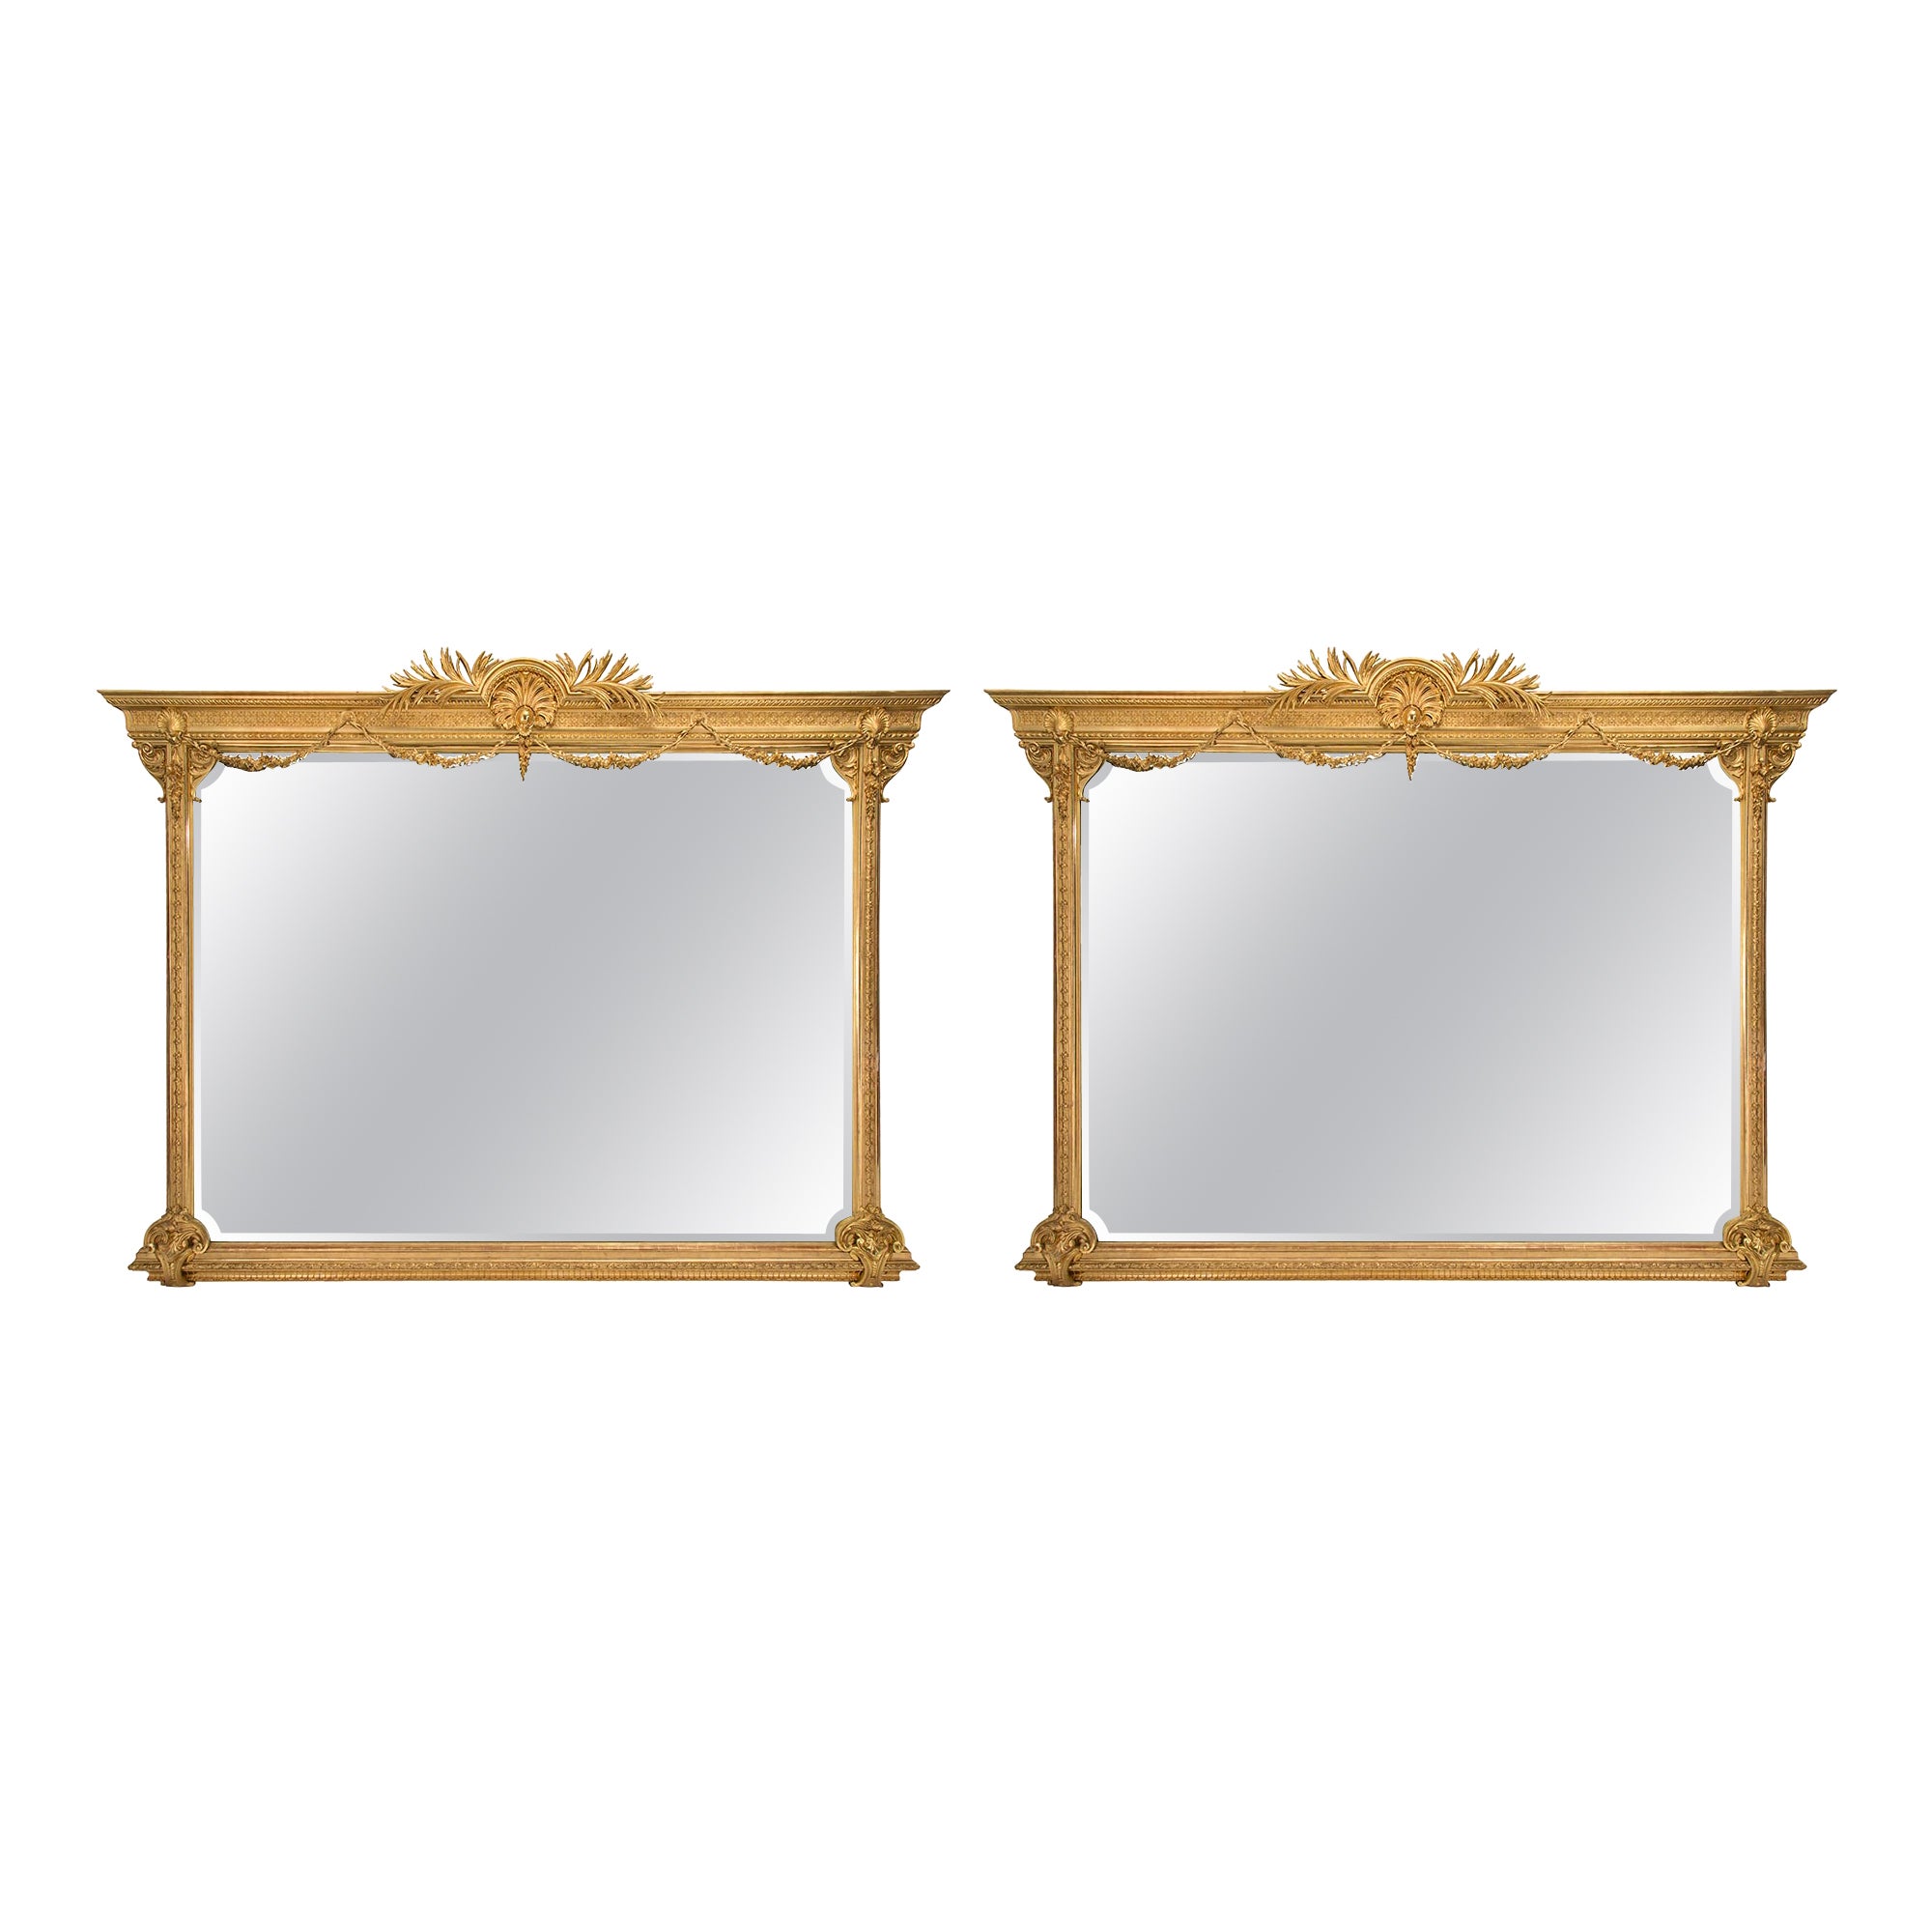 Paire de miroirs en bois doré à grande échelle de style Louis XVI du 19ème siècle italien